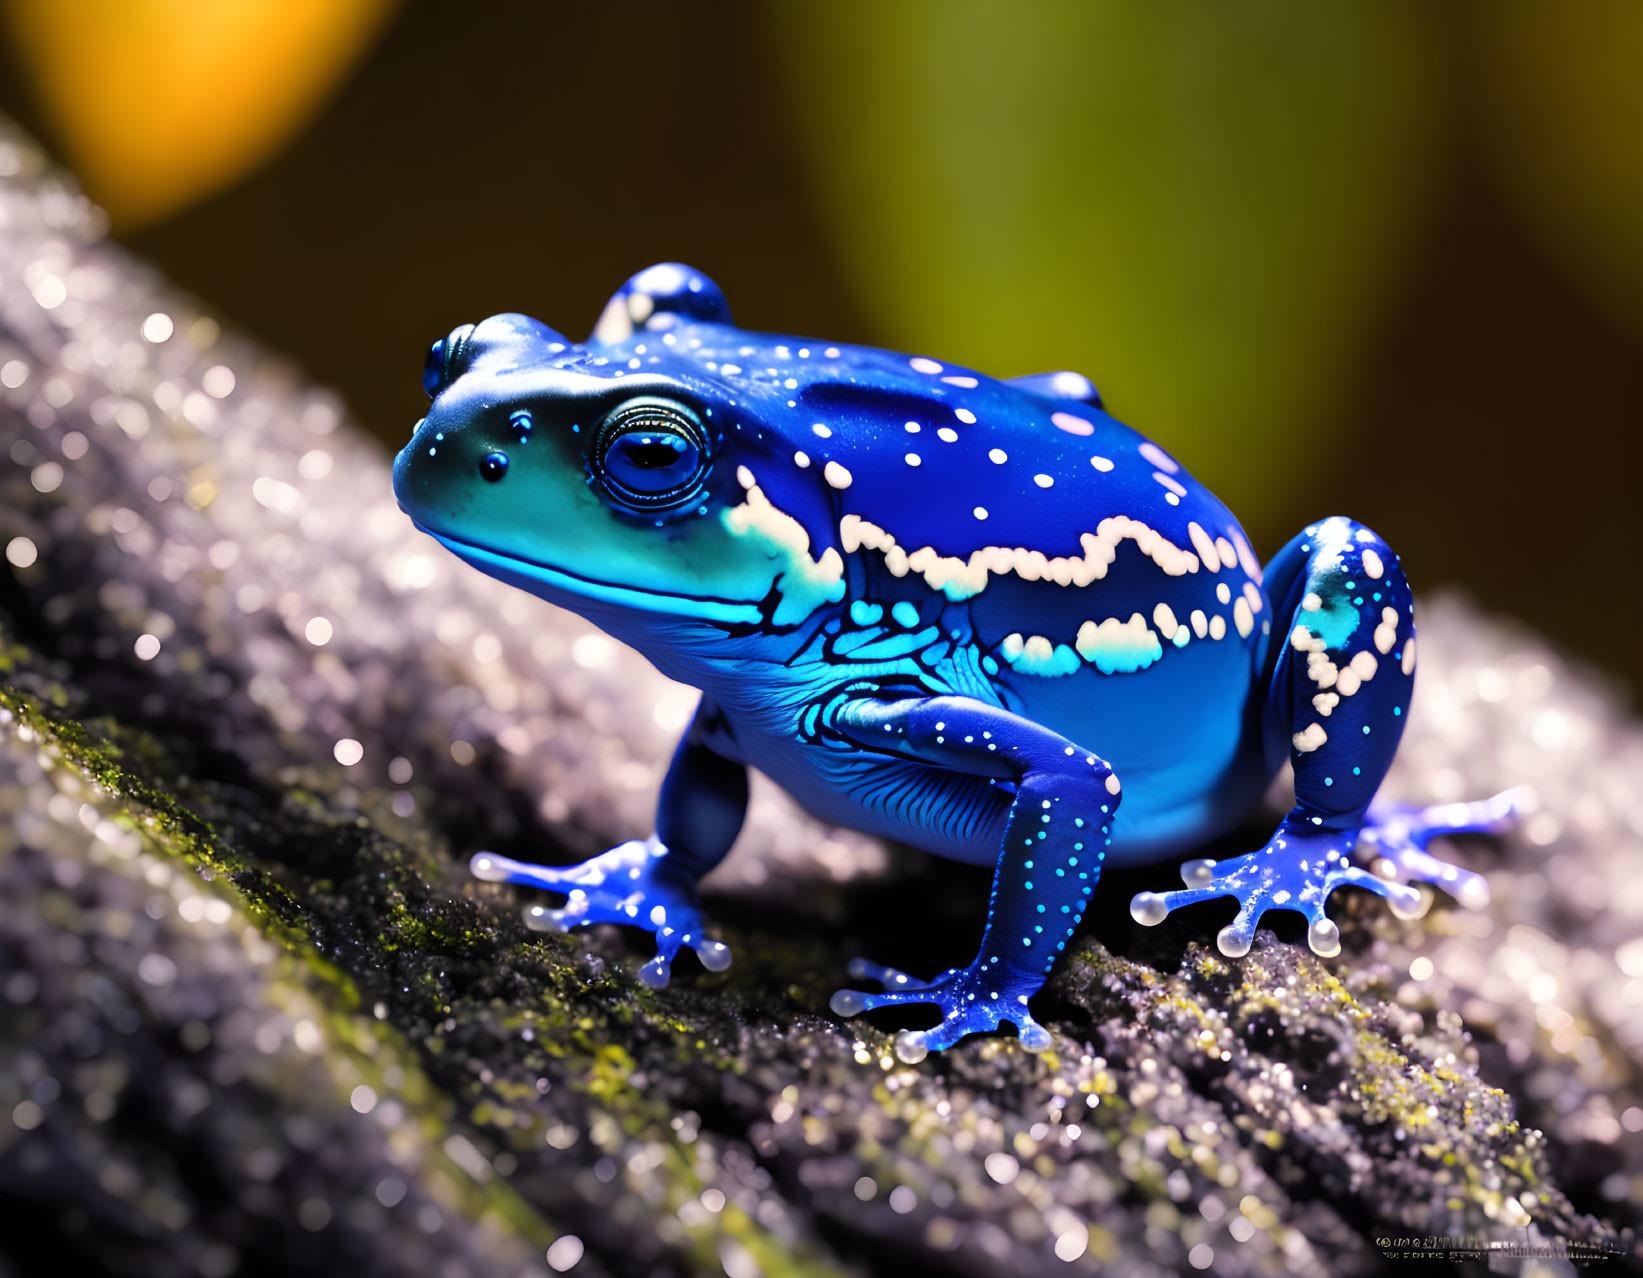 Cosmic Blue poison Dart frog